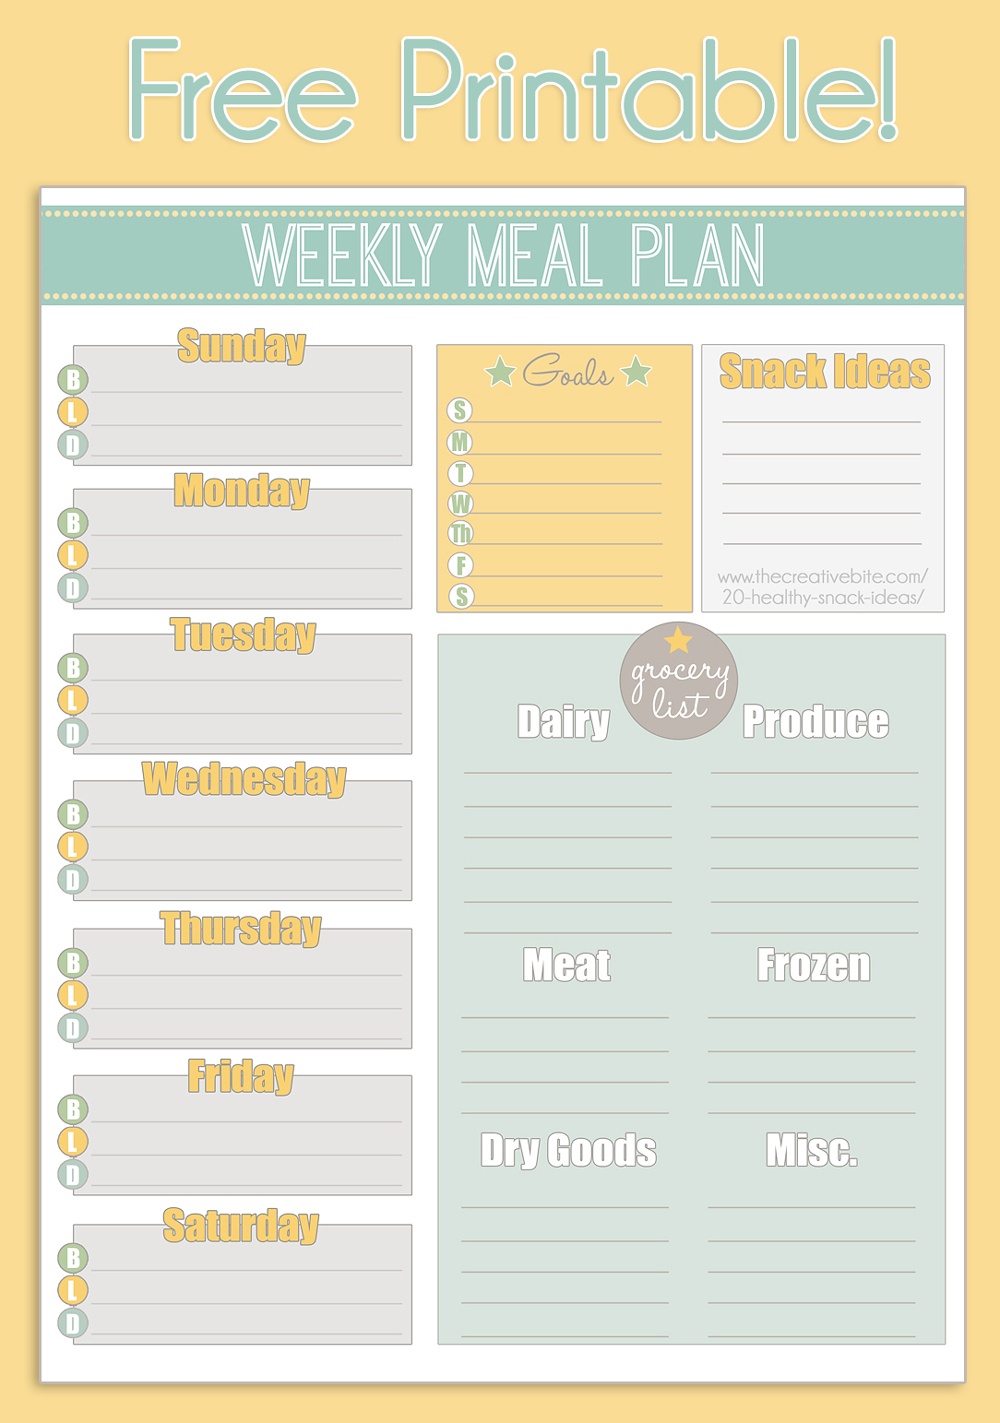 Free Printable Weekly Meal Planner + Calendar - Weekly Menu Free Printable